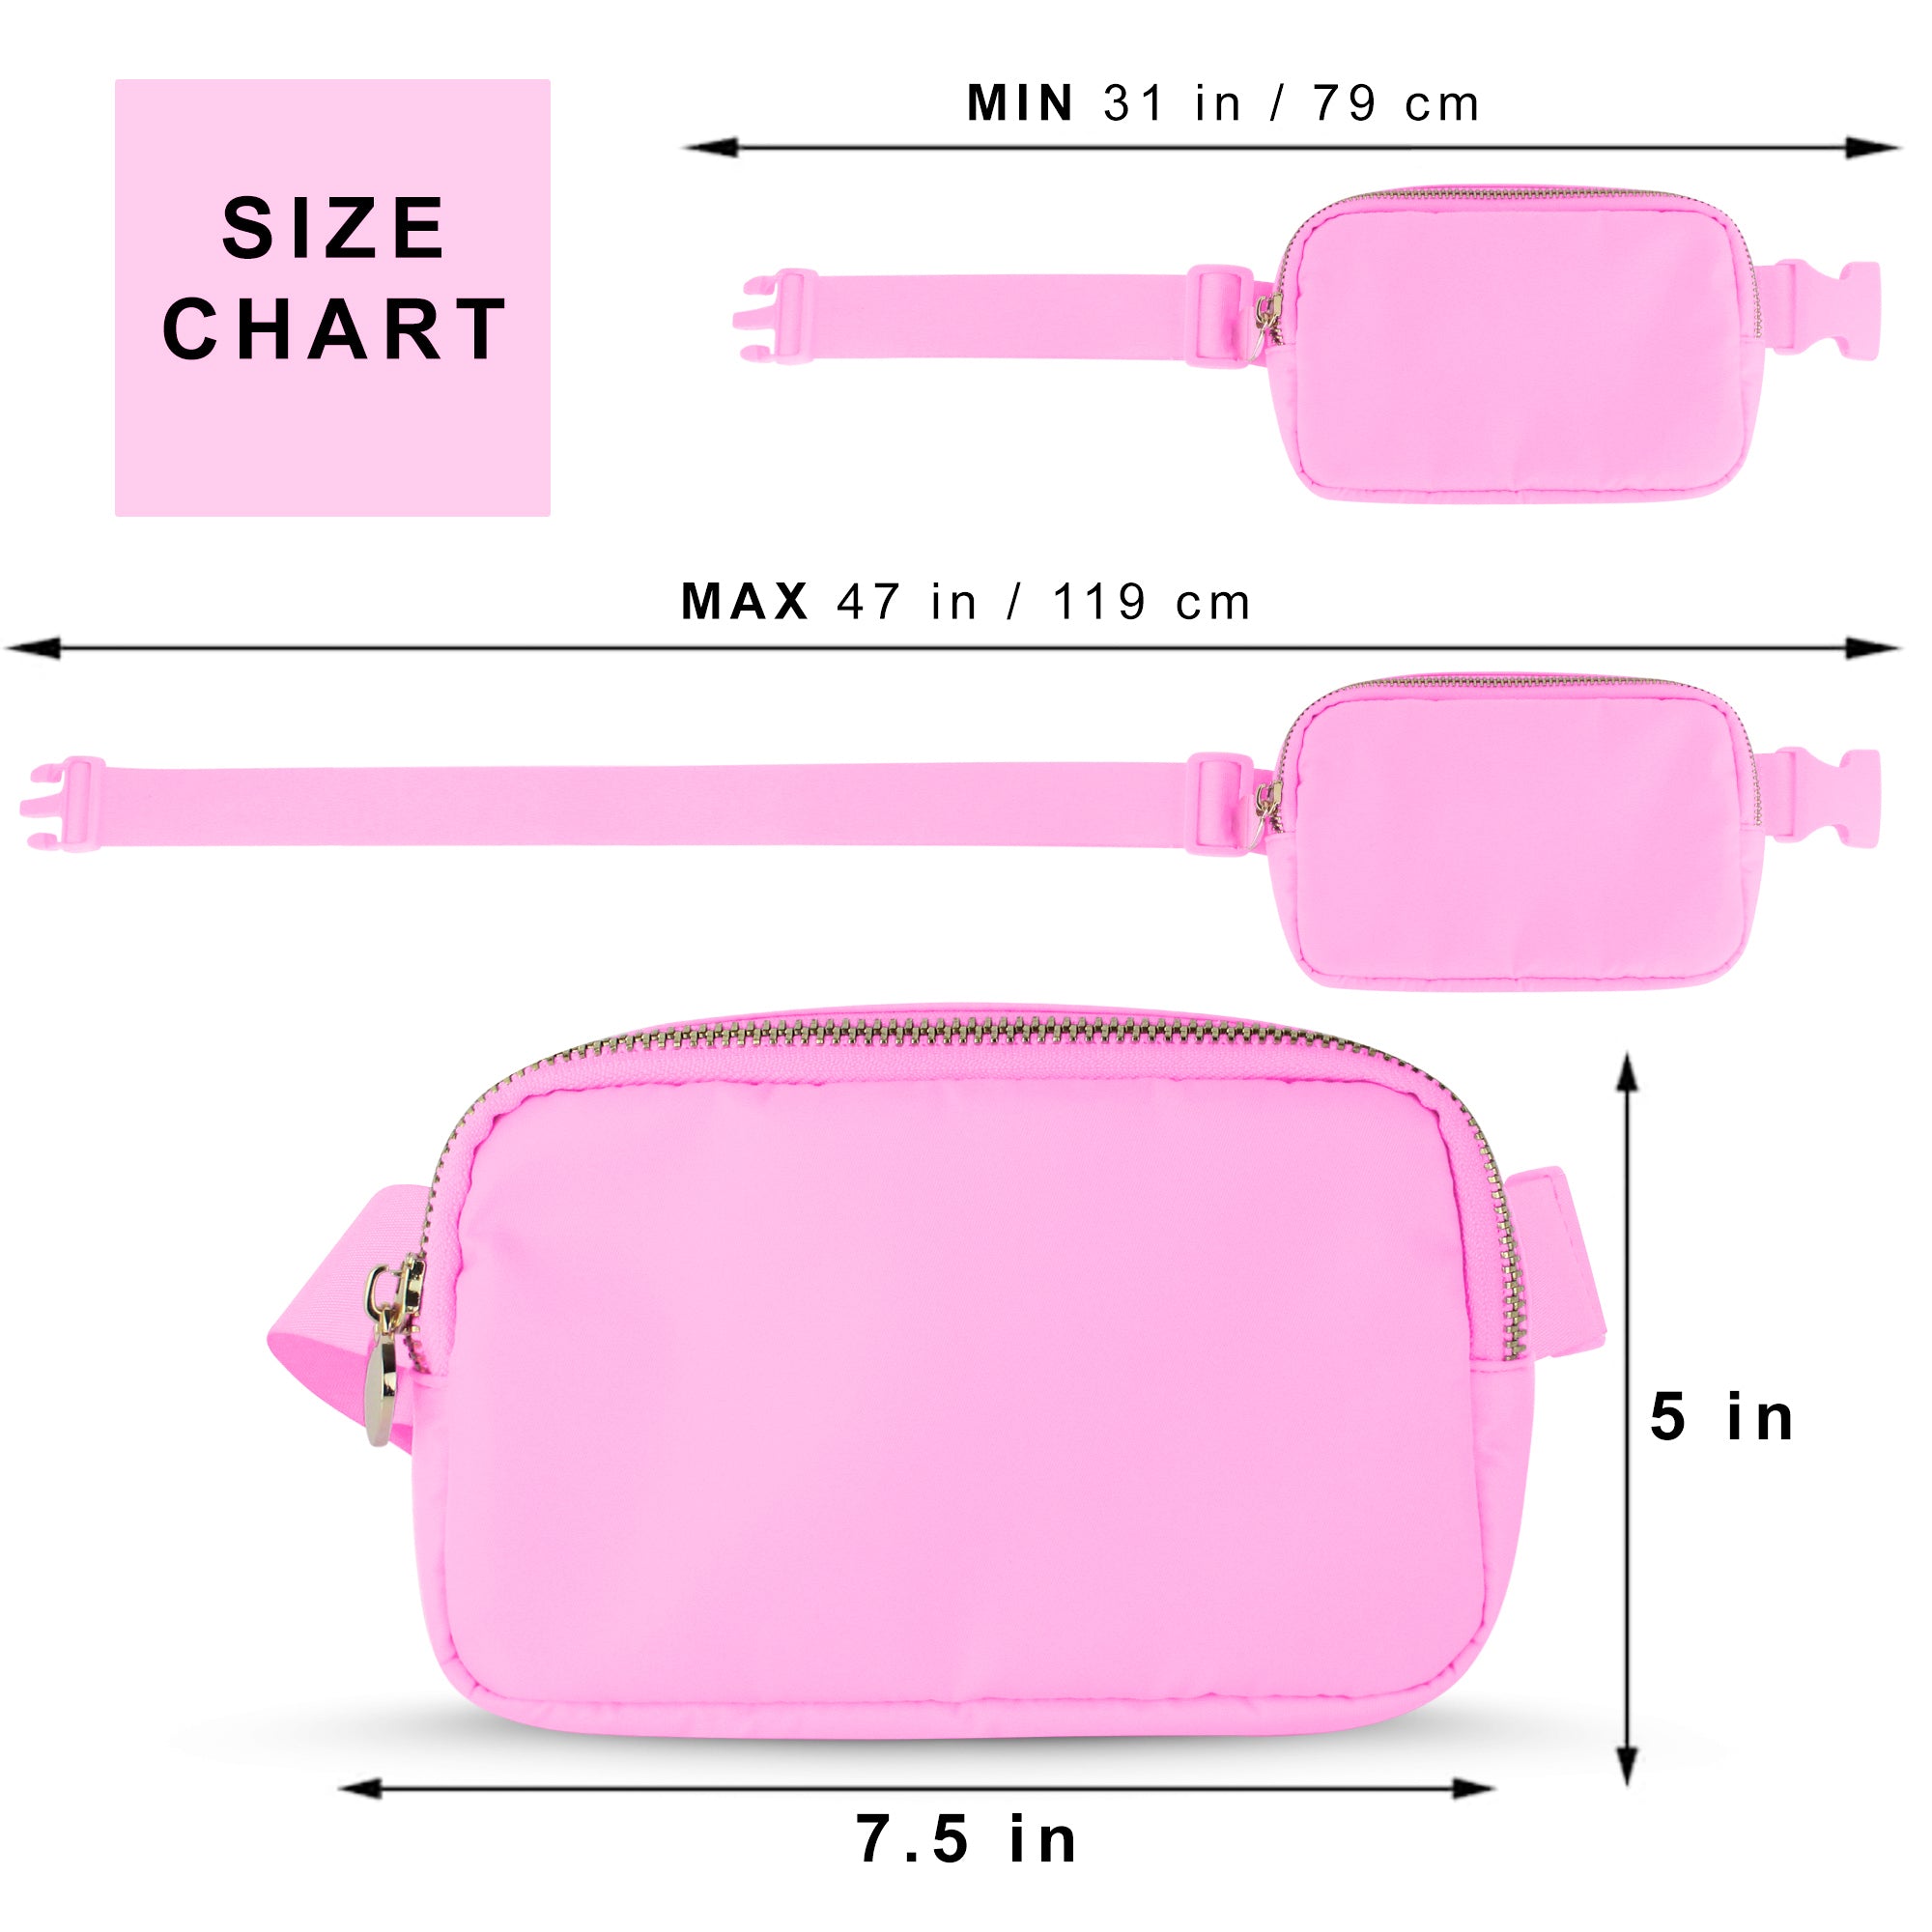 Nylon Belt Bag - Light Pink Fanny Pack For Women - Crossbody Bag Waist Pack Bum Bag